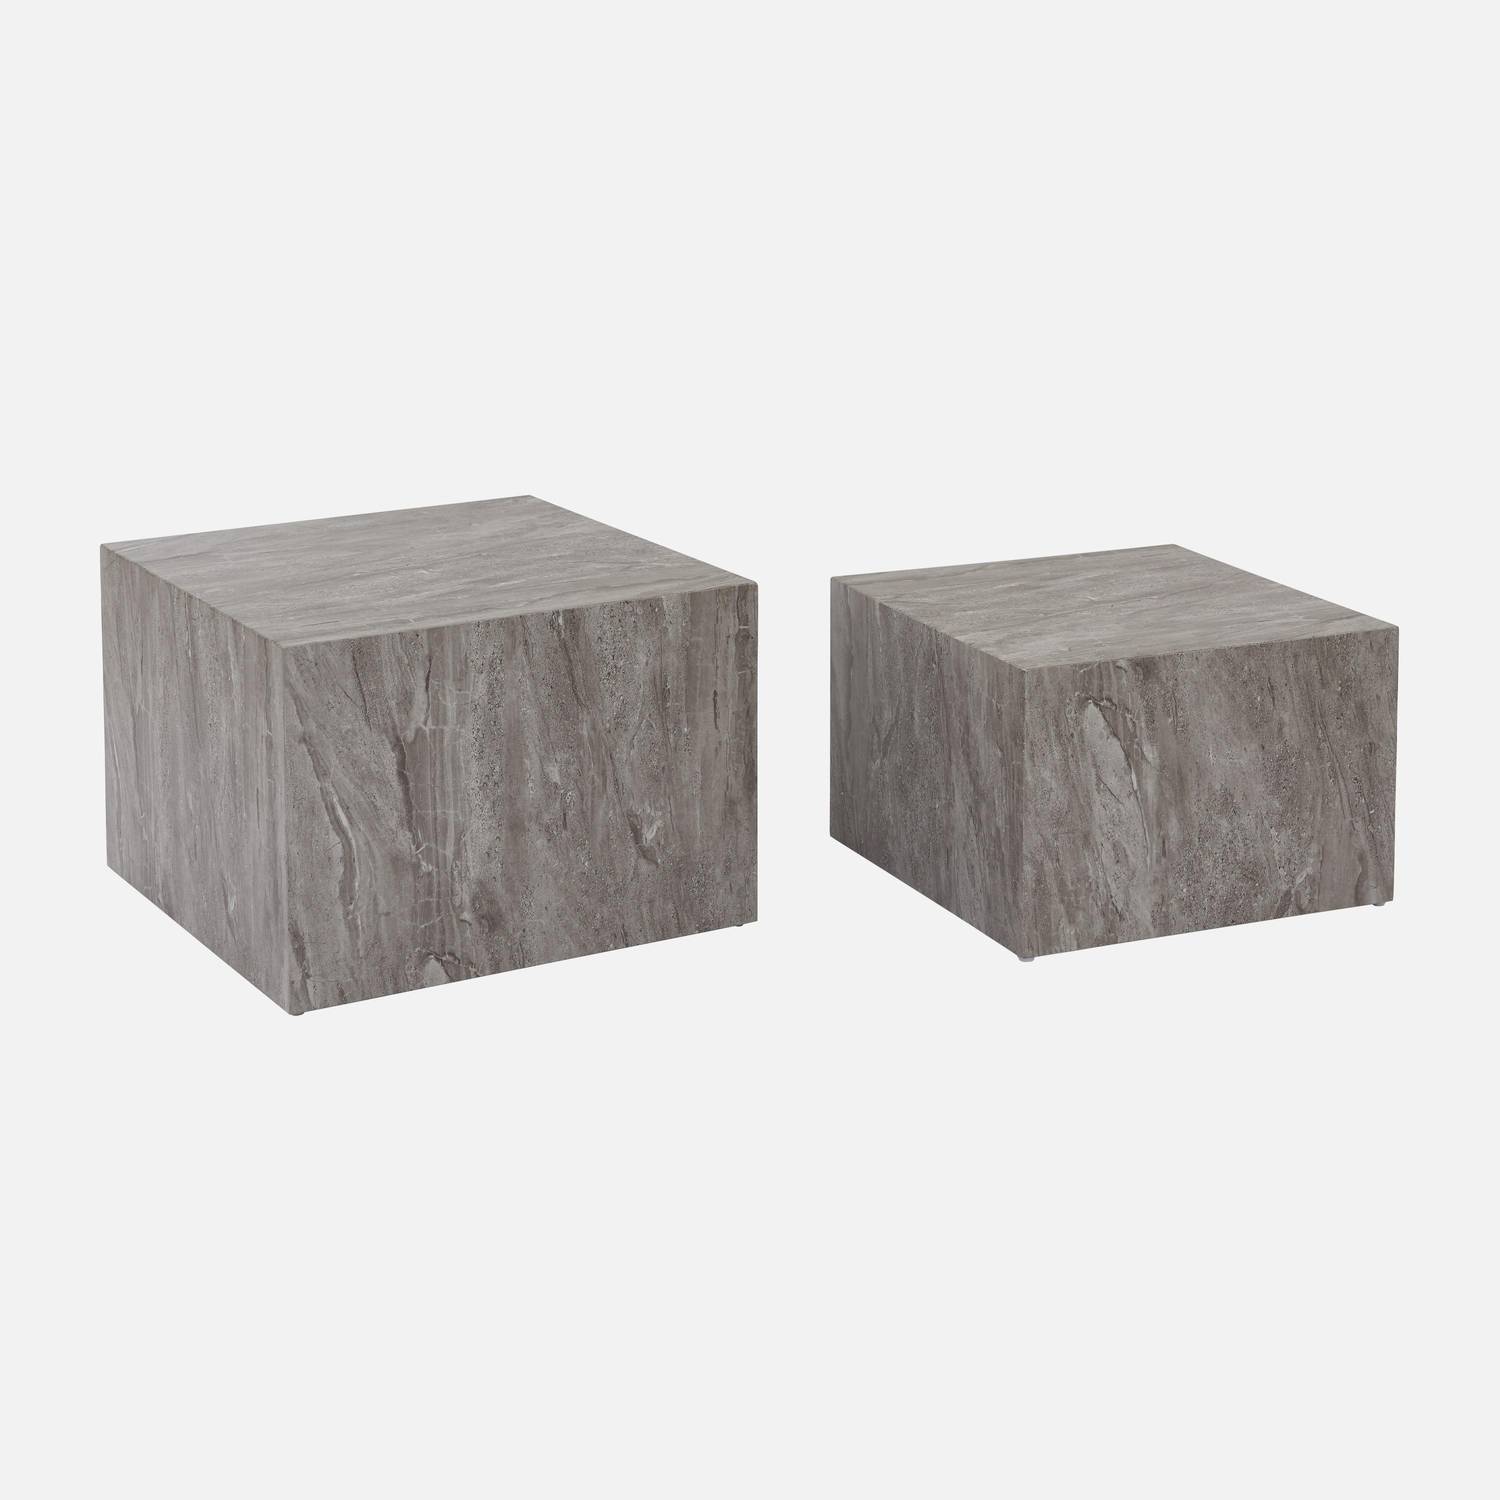 Conjunto de 2 mesas de centro com efeito de mármore cinzento, C 58 x L 58 x A 40cm / C 50 x L 50 x A 33cm Photo4